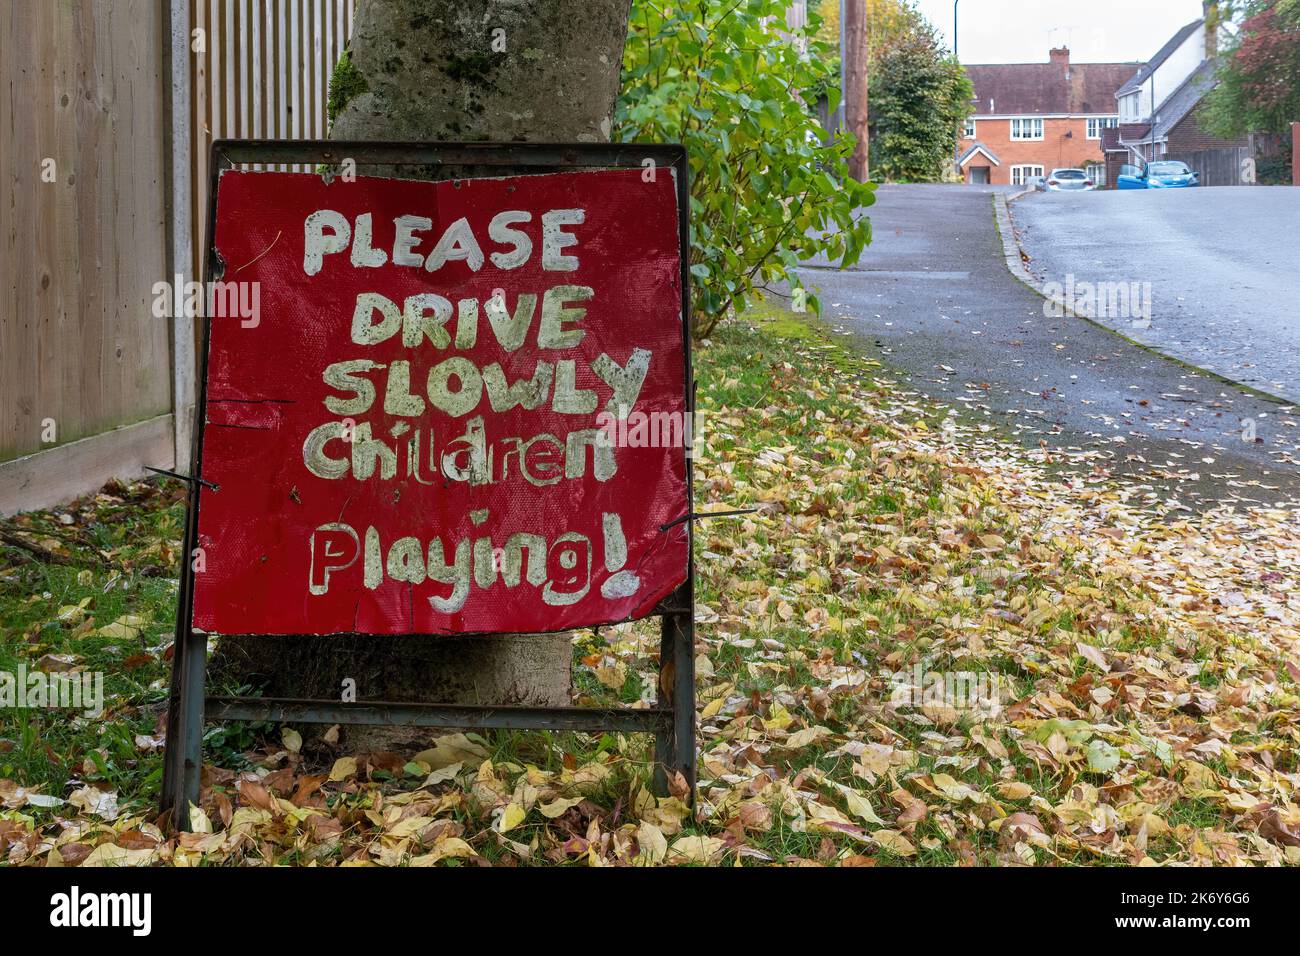 Conduzca despacio, los niños que juegan, señal de carretera roja en la zona residencial, Reino Unido Foto de stock